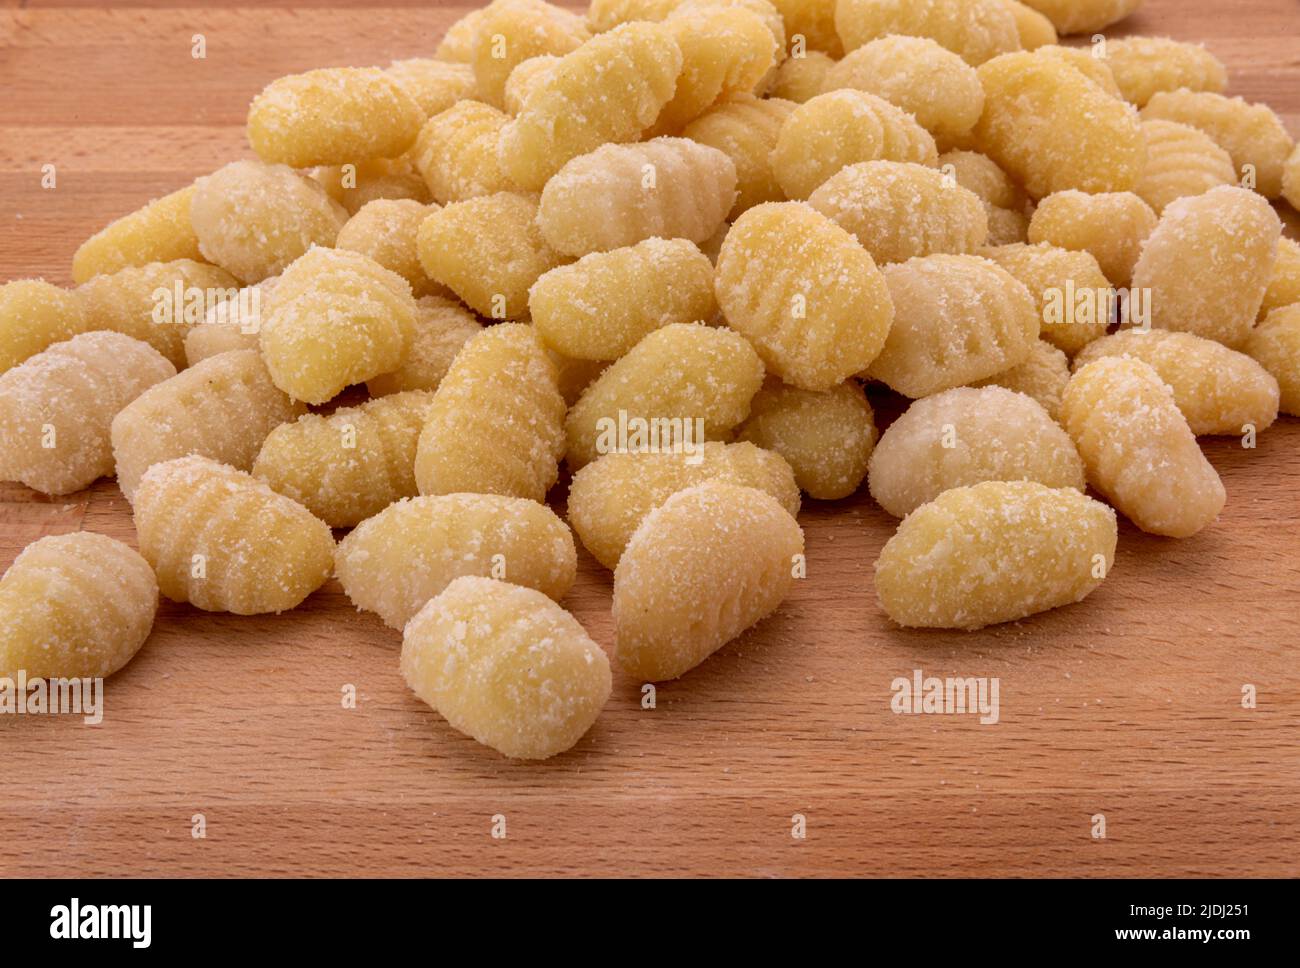 Gnocchi de pomme de terre brut sur table en bois, pâtes italiennes à base de farine et de pommes de terre. Boulettes non cuites Banque D'Images